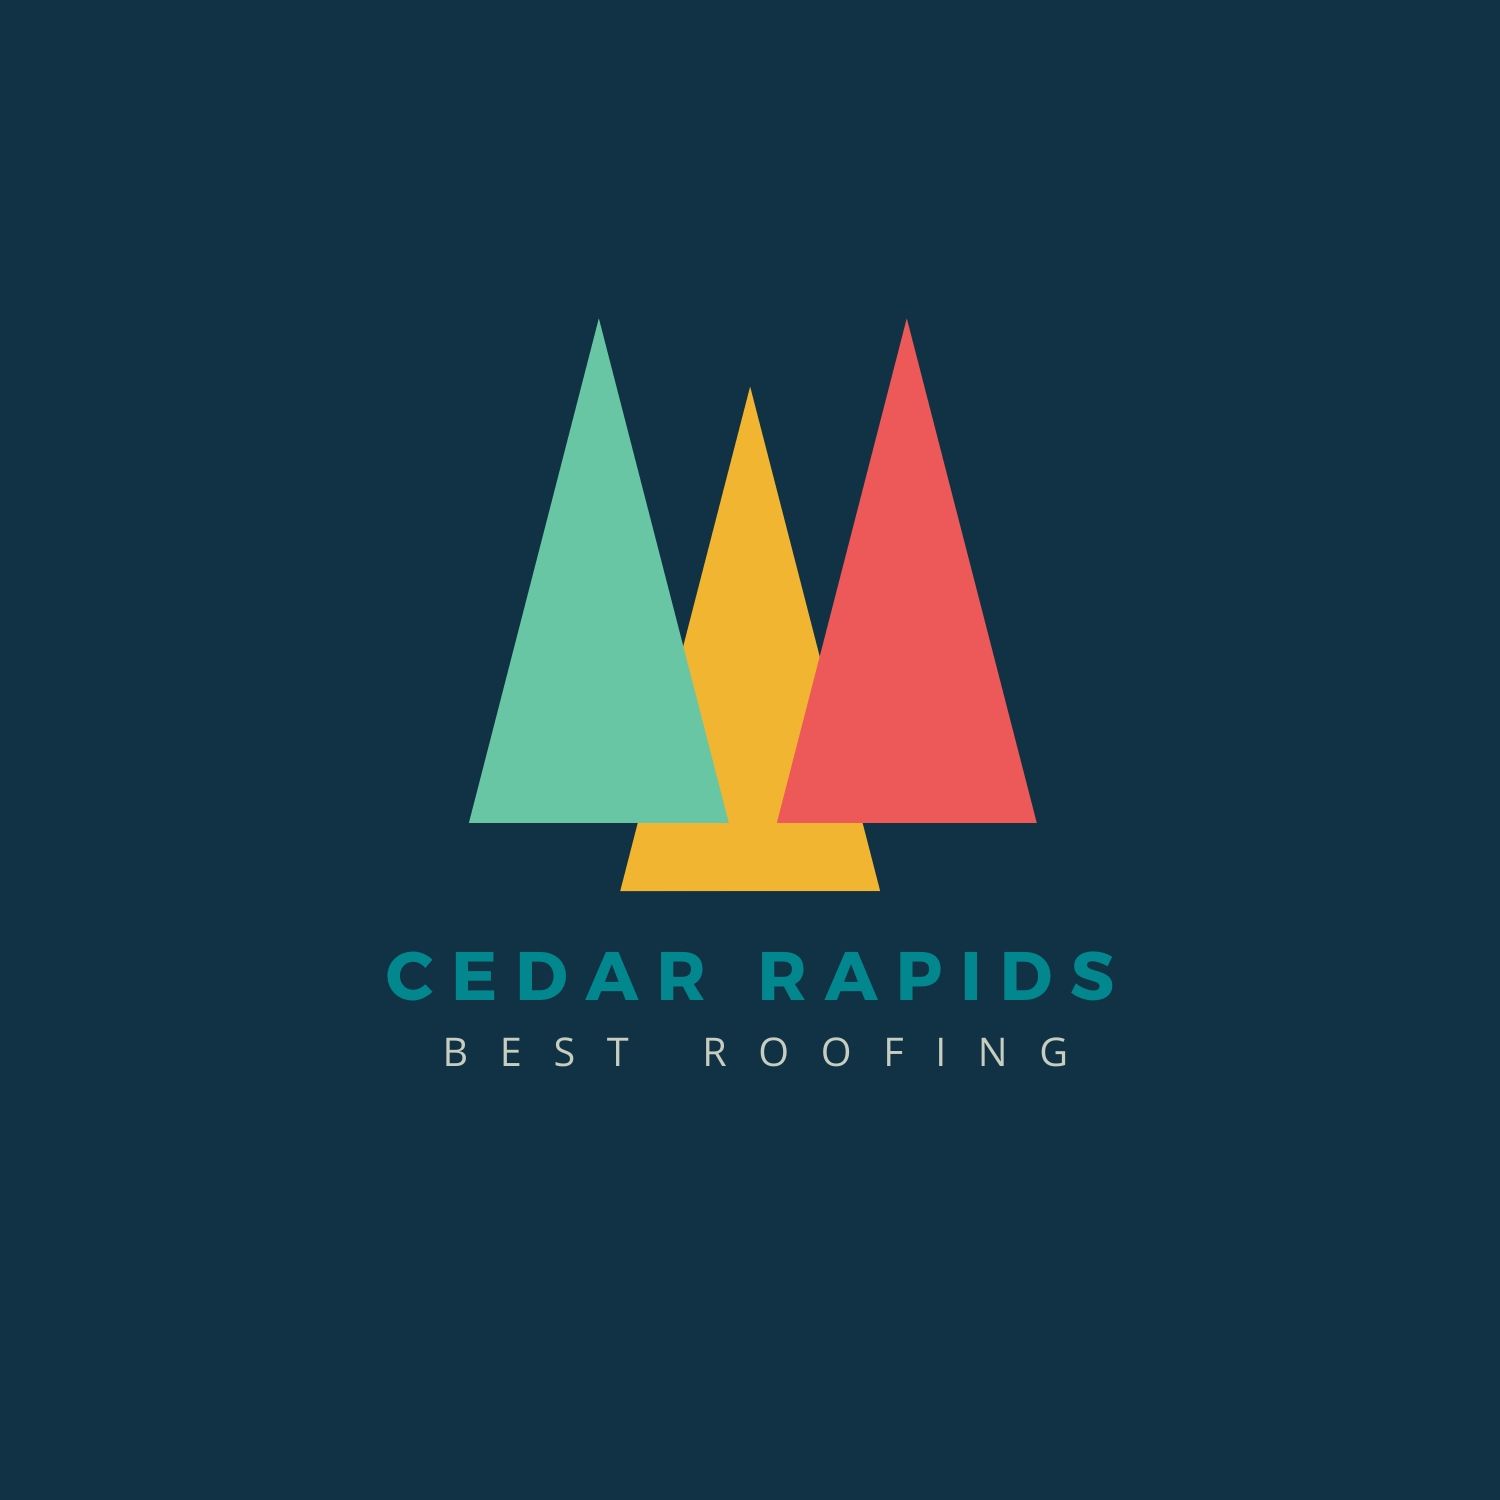 Best Roofing Cedar Rapids logo